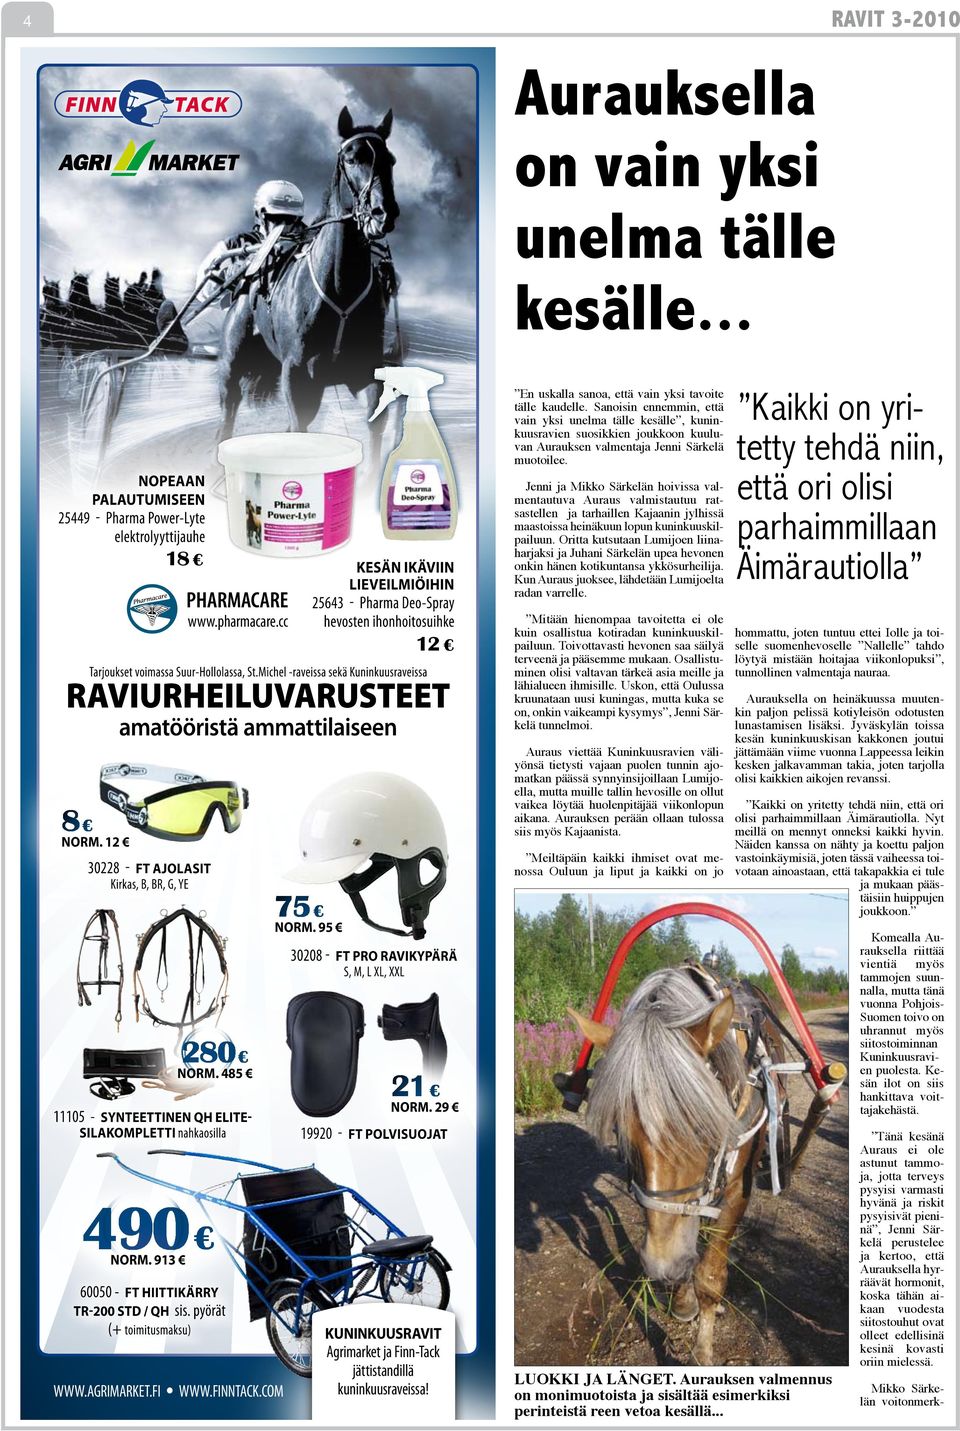 Jenni ja Mikko Särkelän hoivissa valmentautuva Auraus valmistautuu ratsastellen ja tarhaillen Kajaanin jylhissä maastoissa heinäkuun lopun kuninkuuskilpailuun.